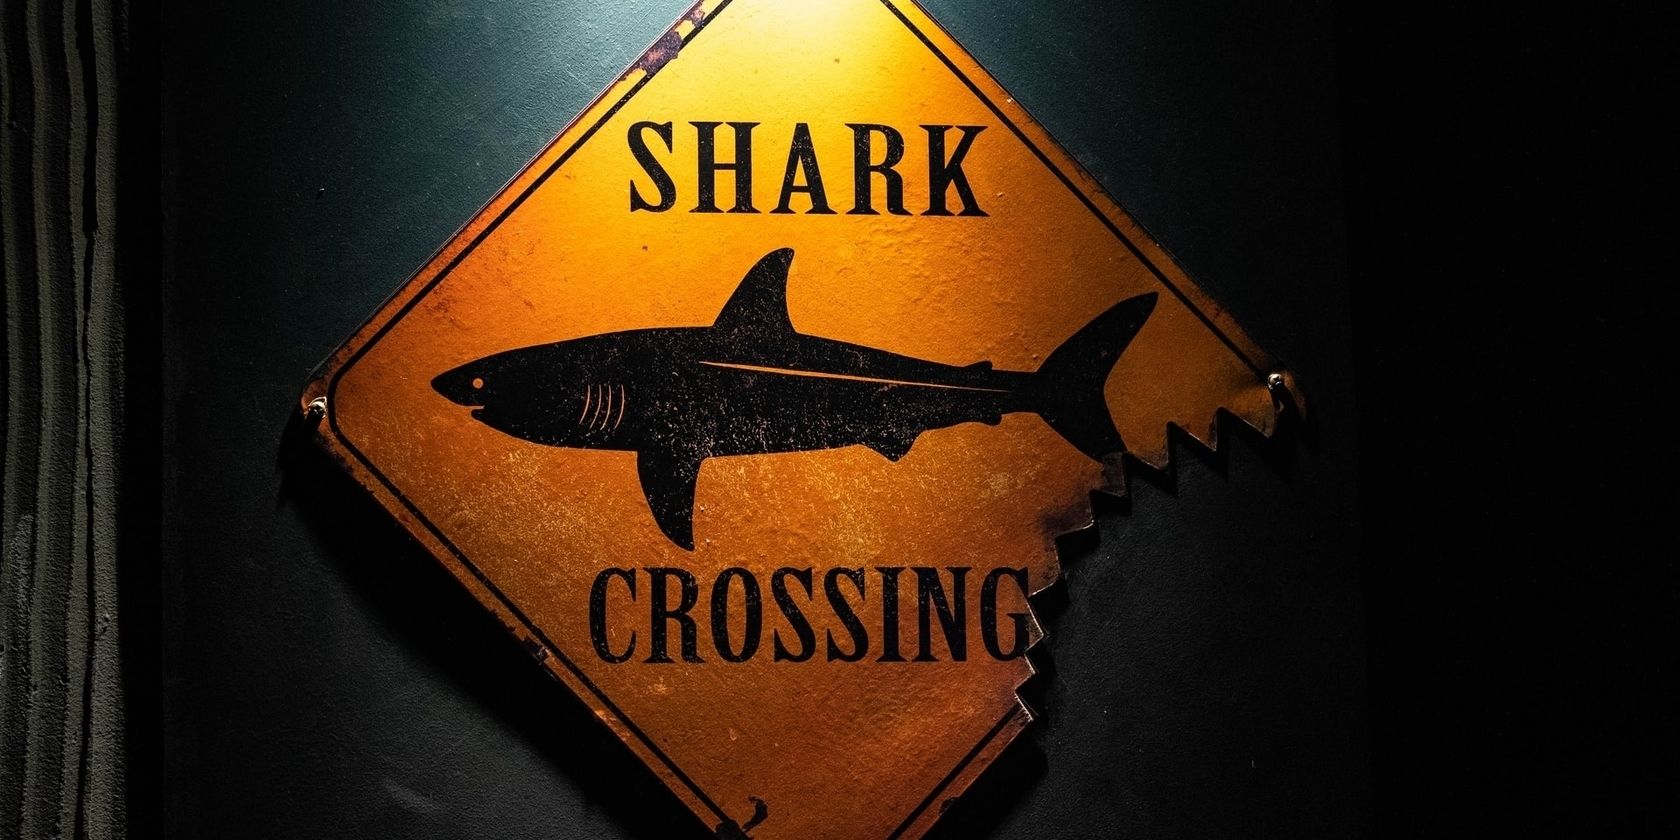 Shark-crossing-warning-sign